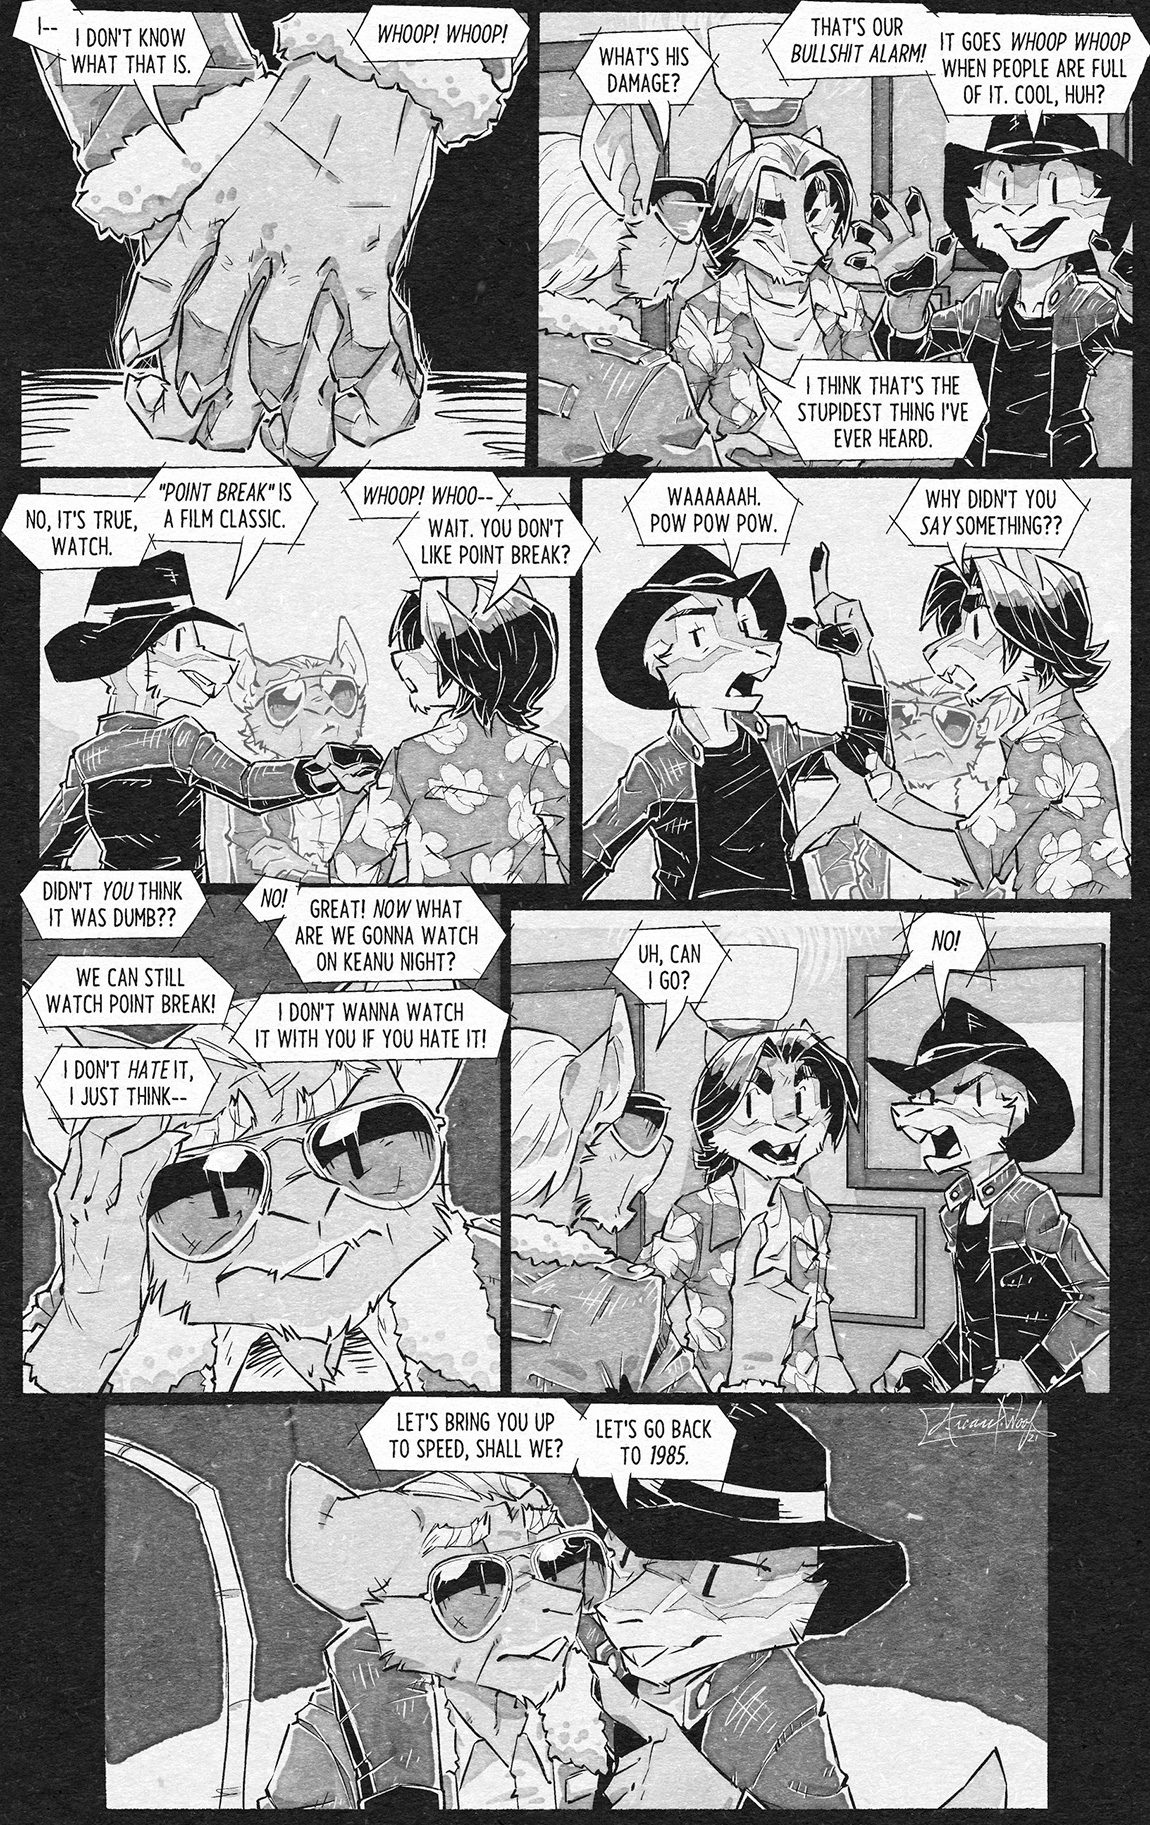 Arcane's Rescue Rangers Comic Sample